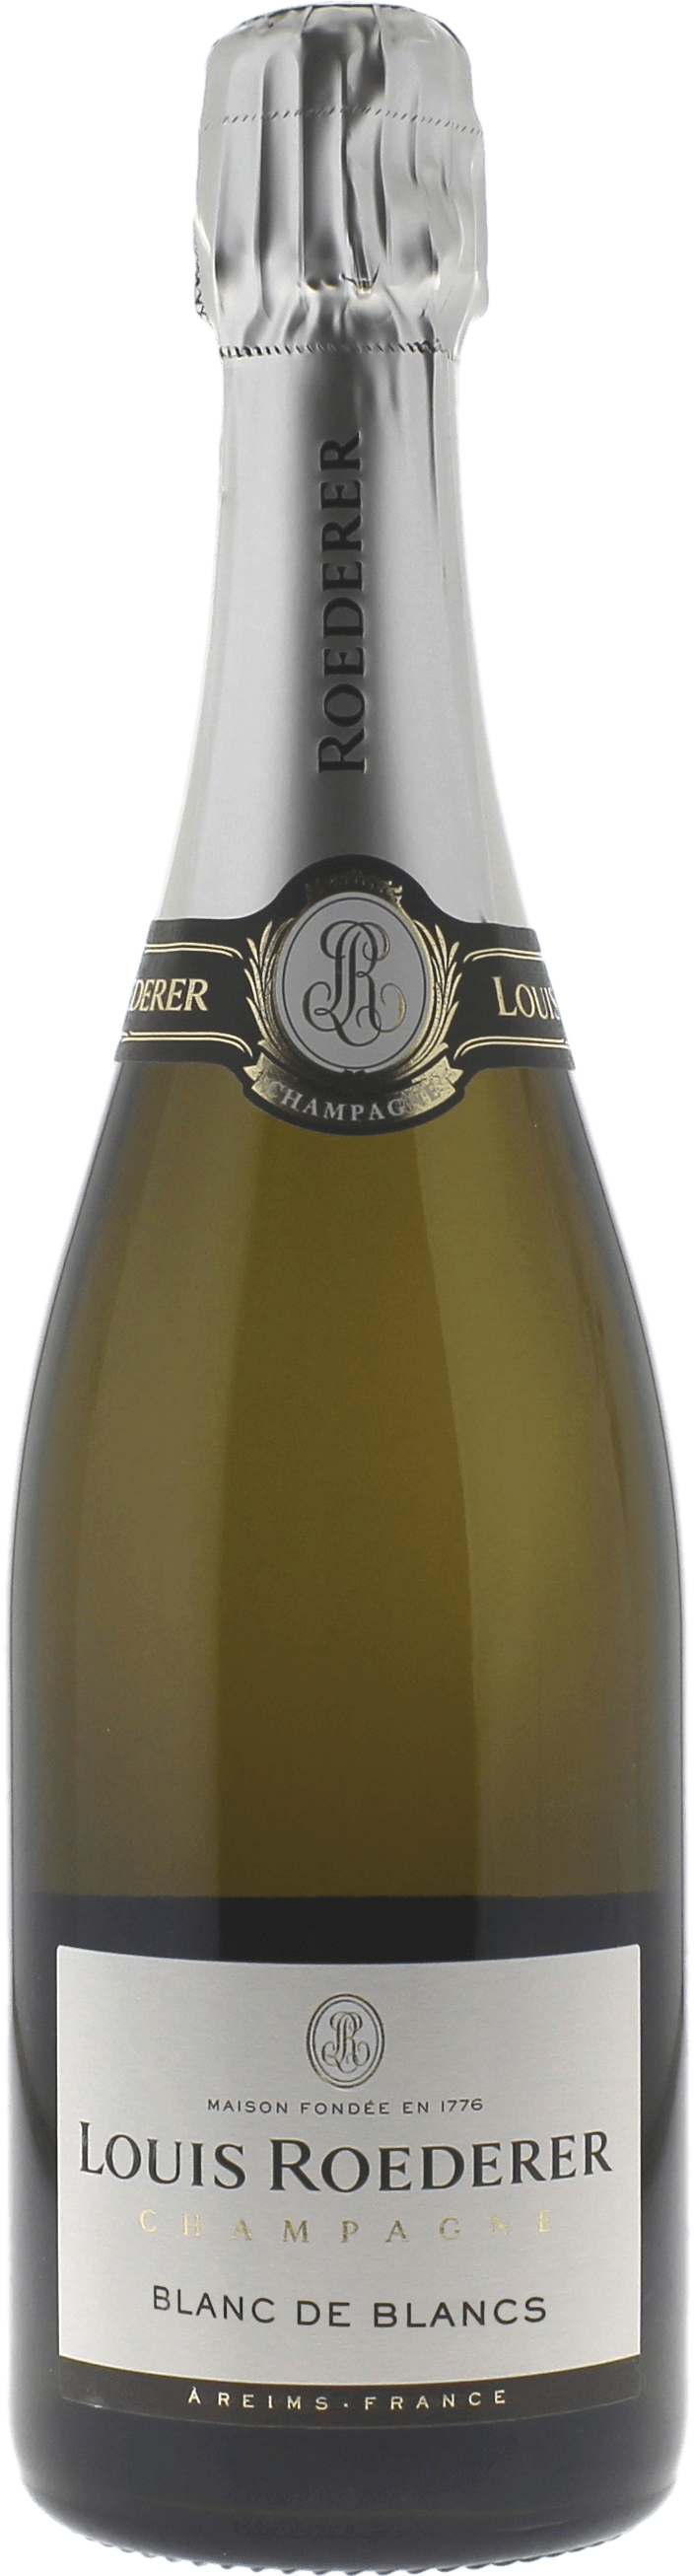 Louis roederer blanc de blancs 2011  Roederer, Champagne